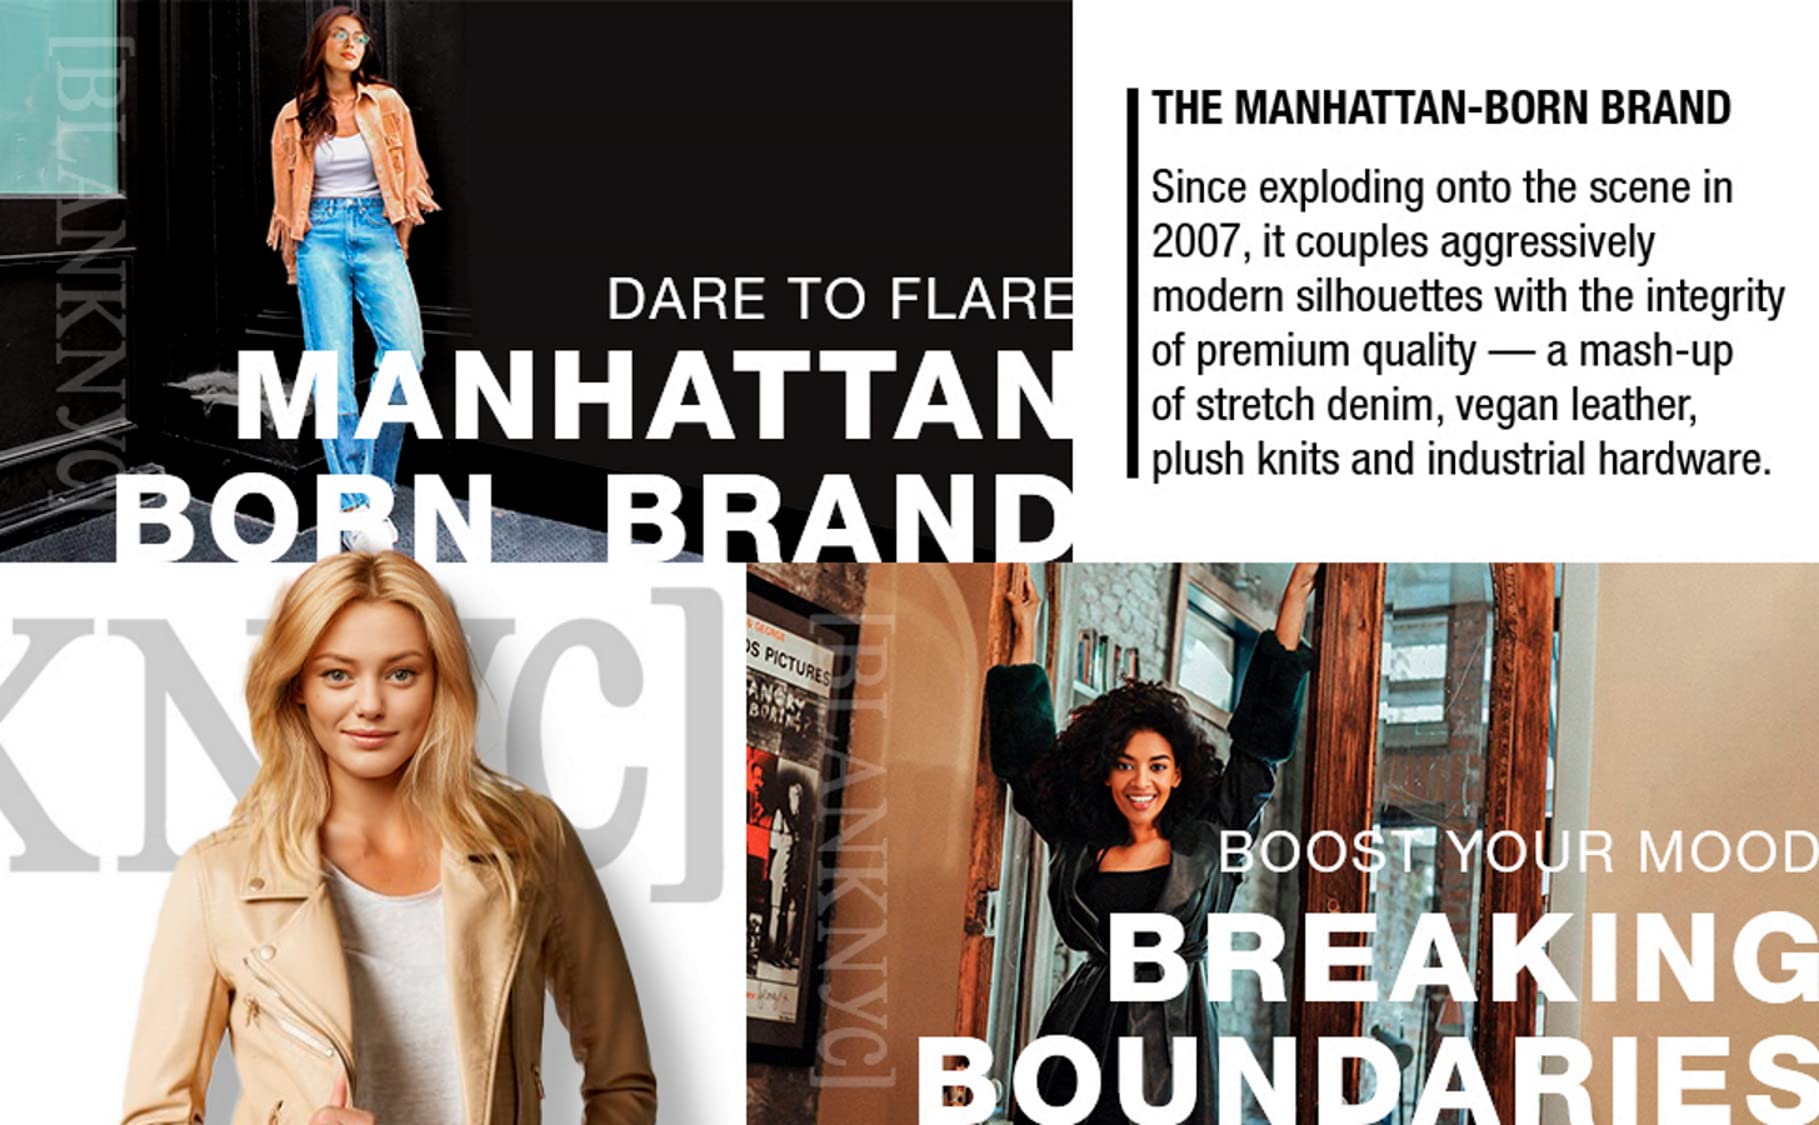 [BLANKNYC] womens Luxury Clothing Plaid Shirt Jacket, Stylish Shacket & Trendy Coat